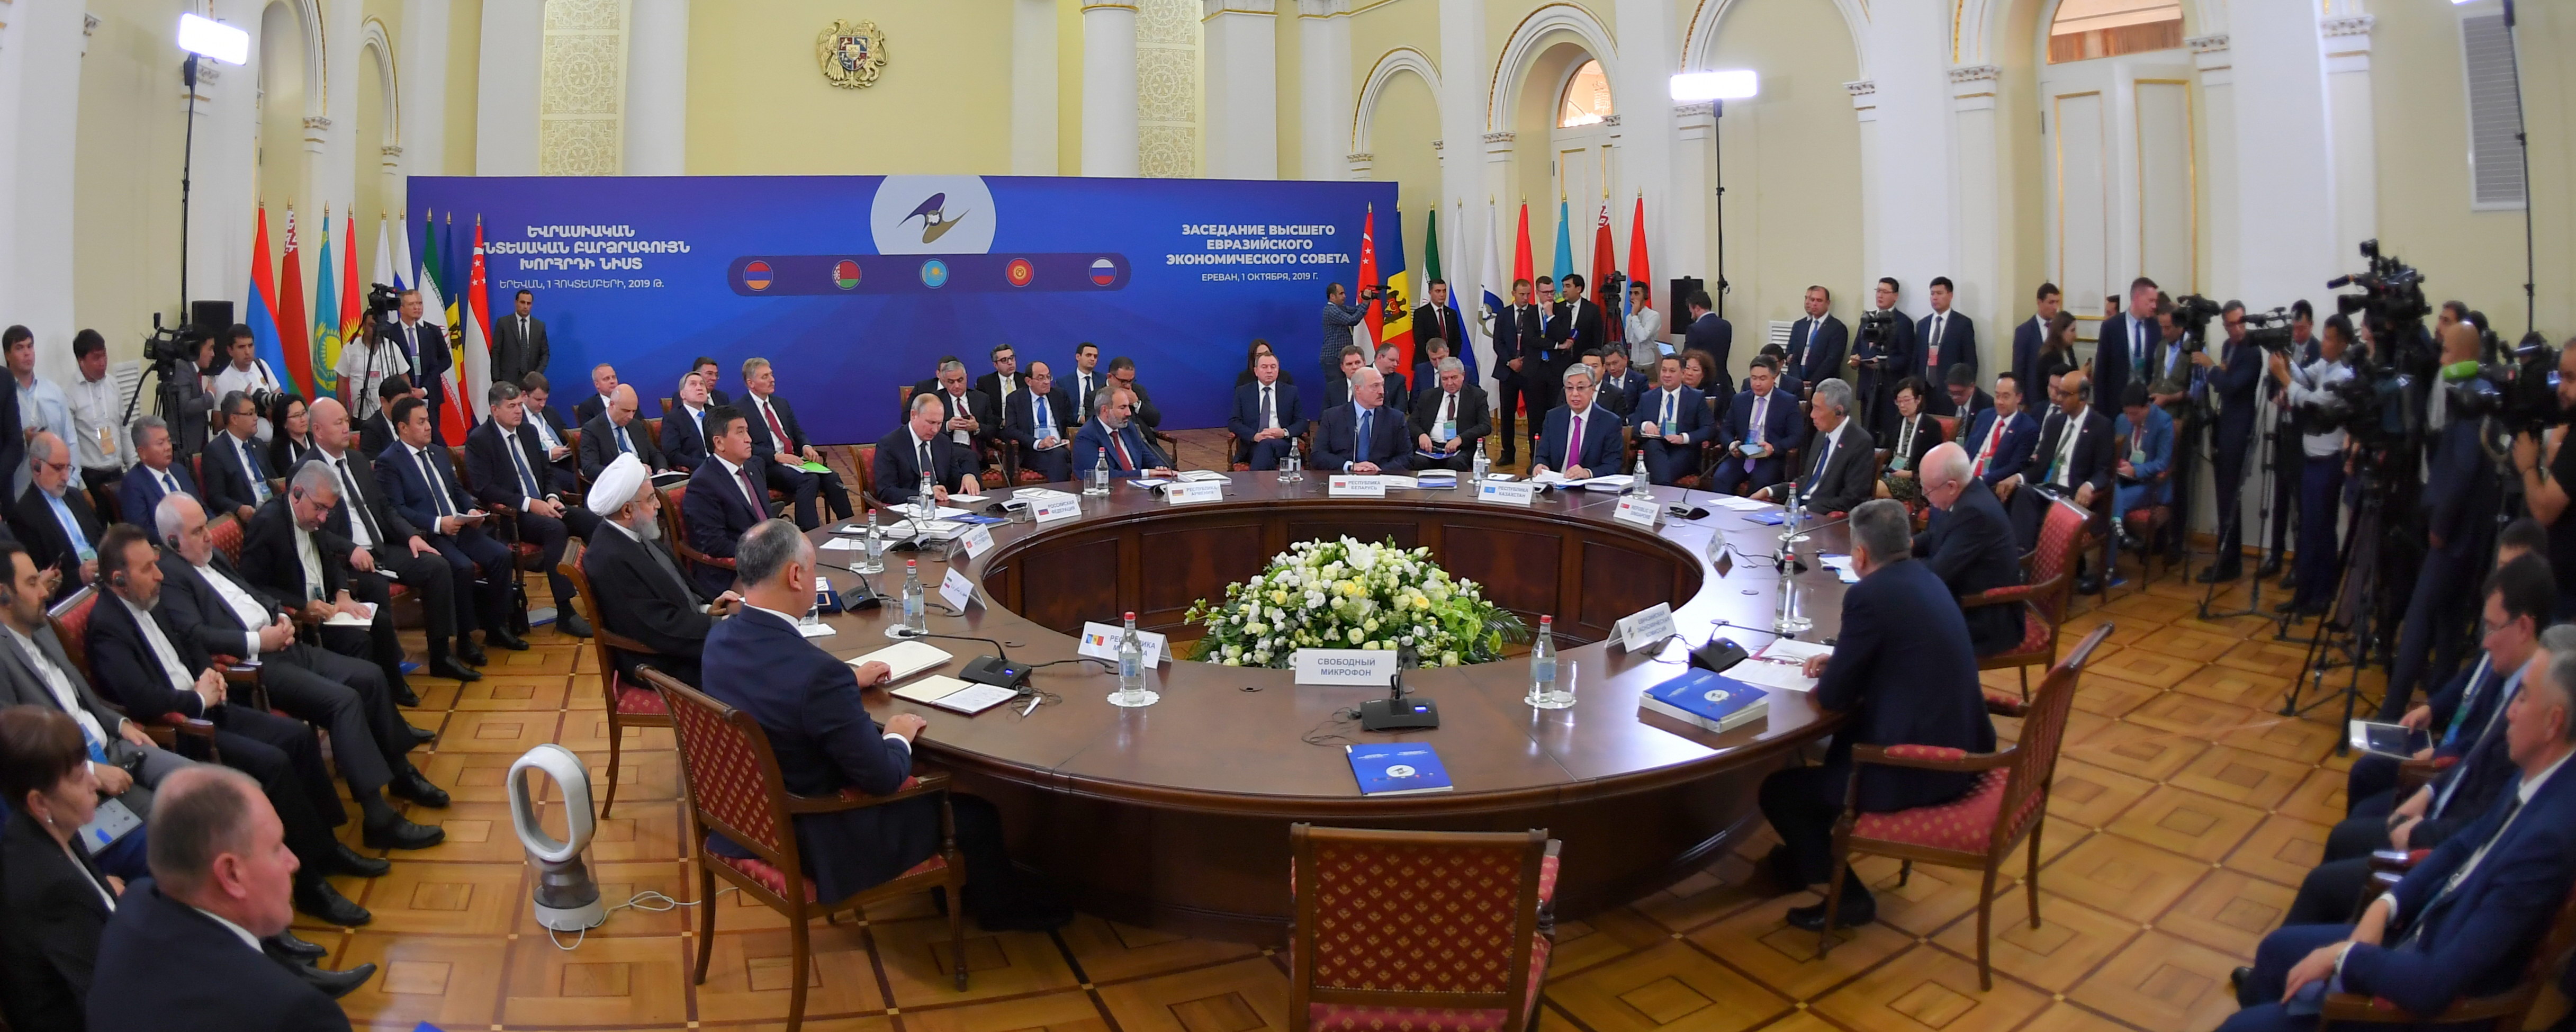 Евразийские международные организации. Токаев ЕАЭС. Заседание высшего Евразийского экономического совета. Высший Евразийский экономический совет в Кыргызстане. Политика совещание.